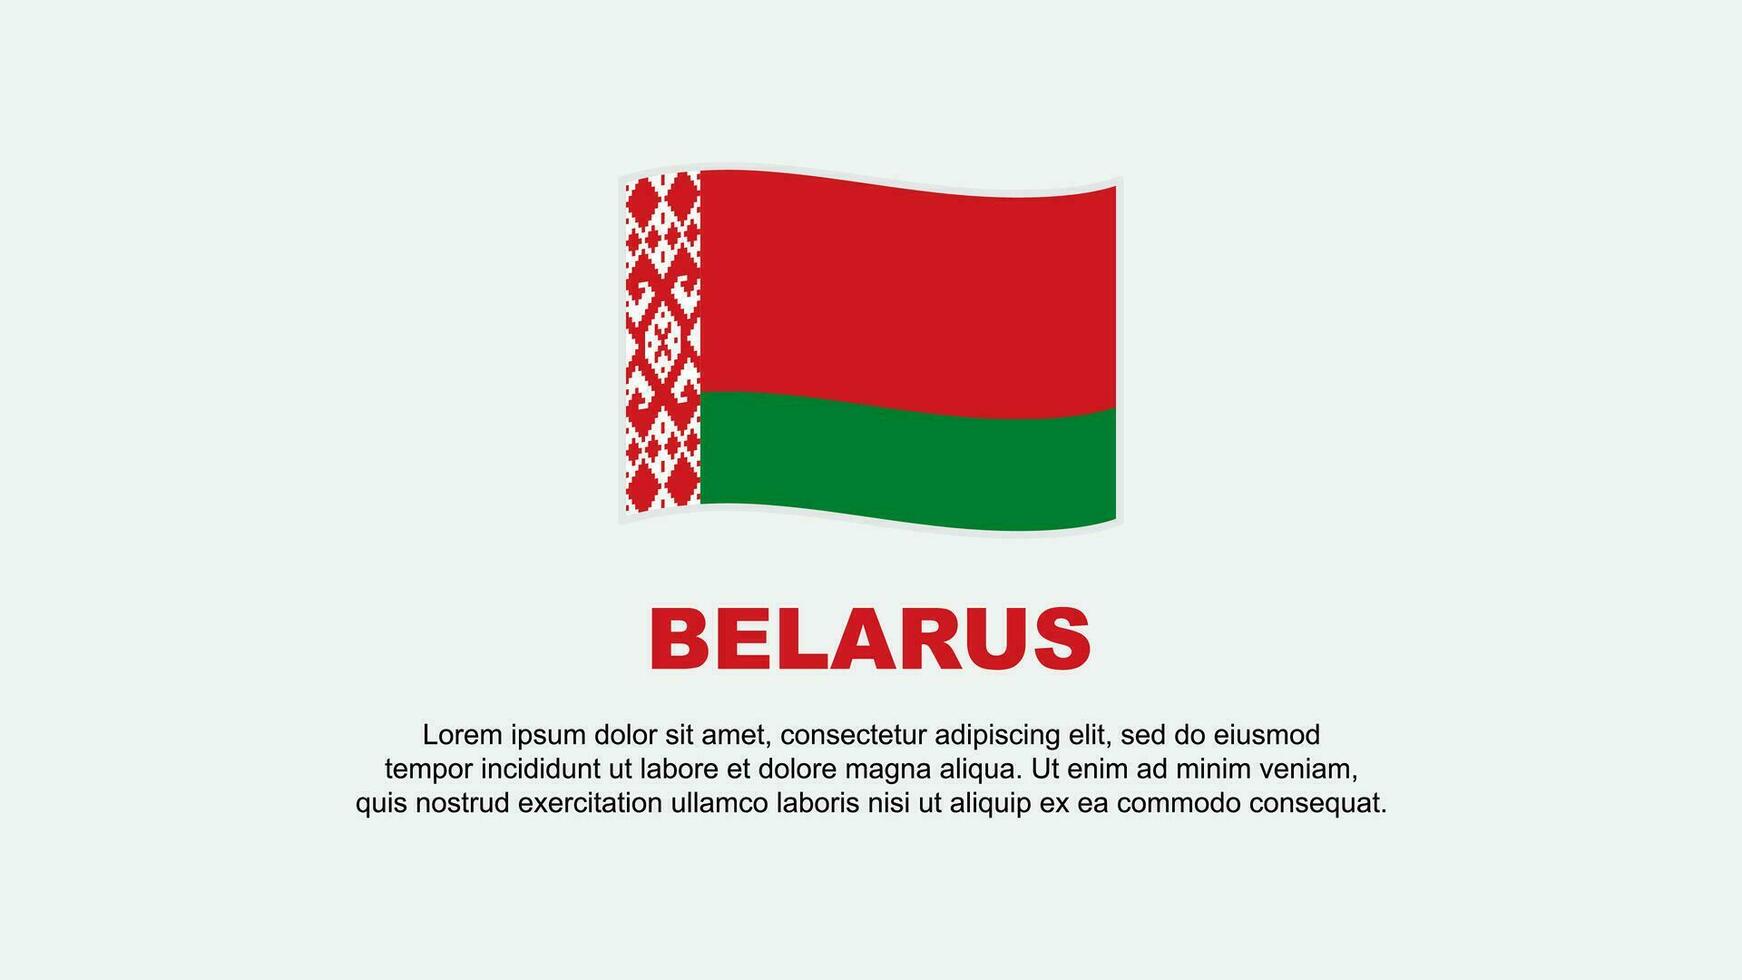 Belarus Flag Abstract Background Design Template. Belarus Independence Day Banner Social Media Vector Illustration. Belarus Background